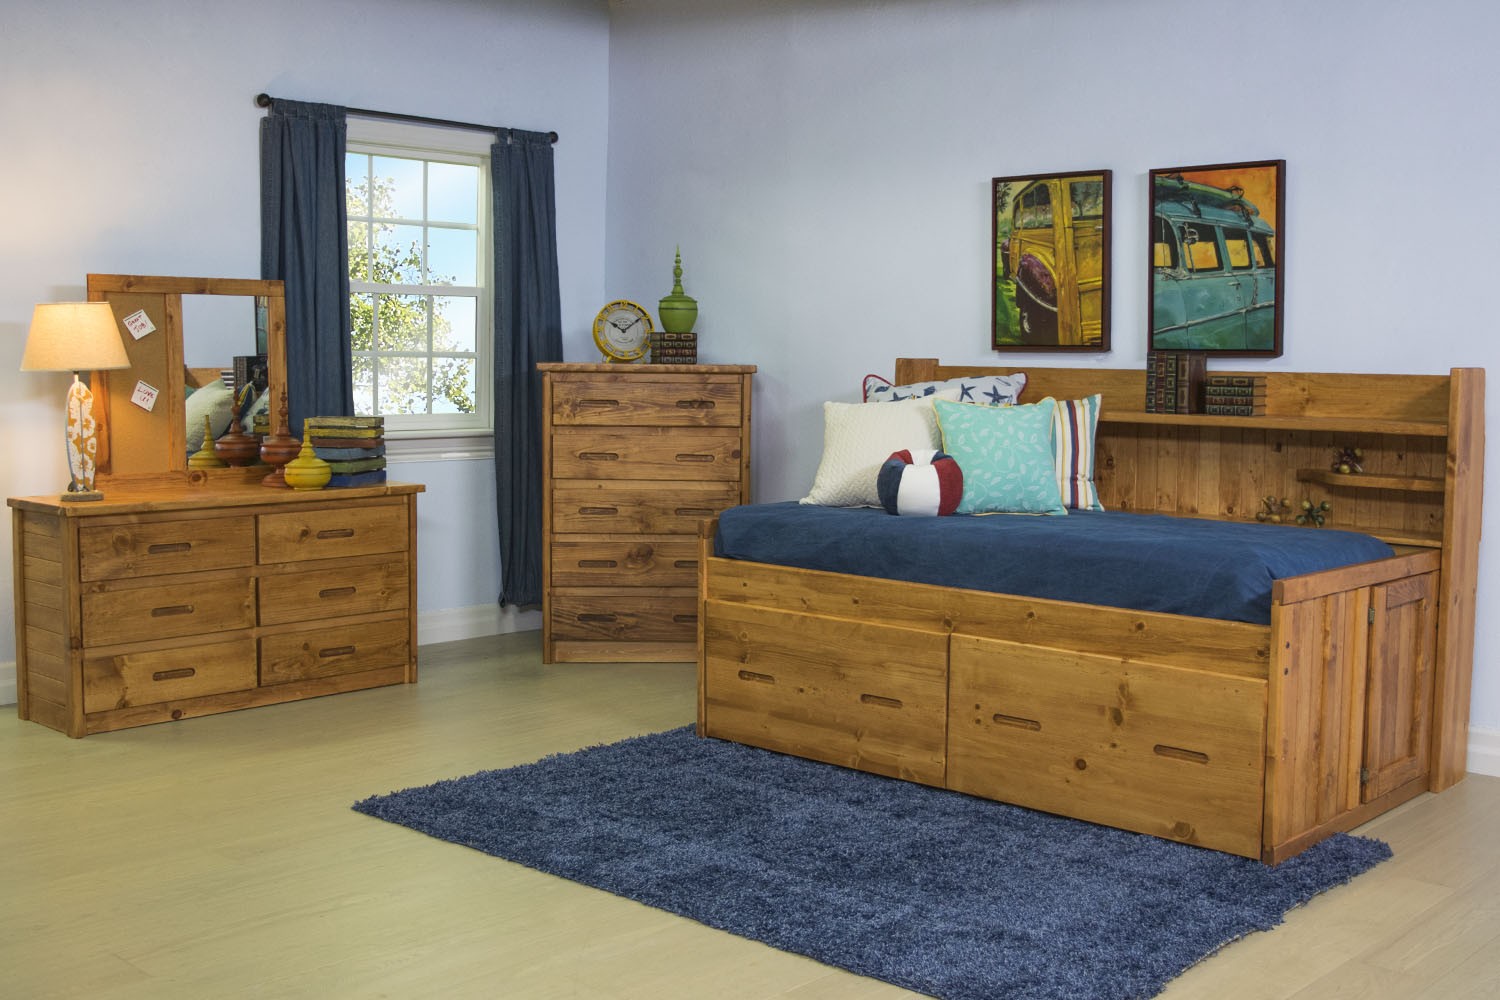 Kids bedroom furniture for less